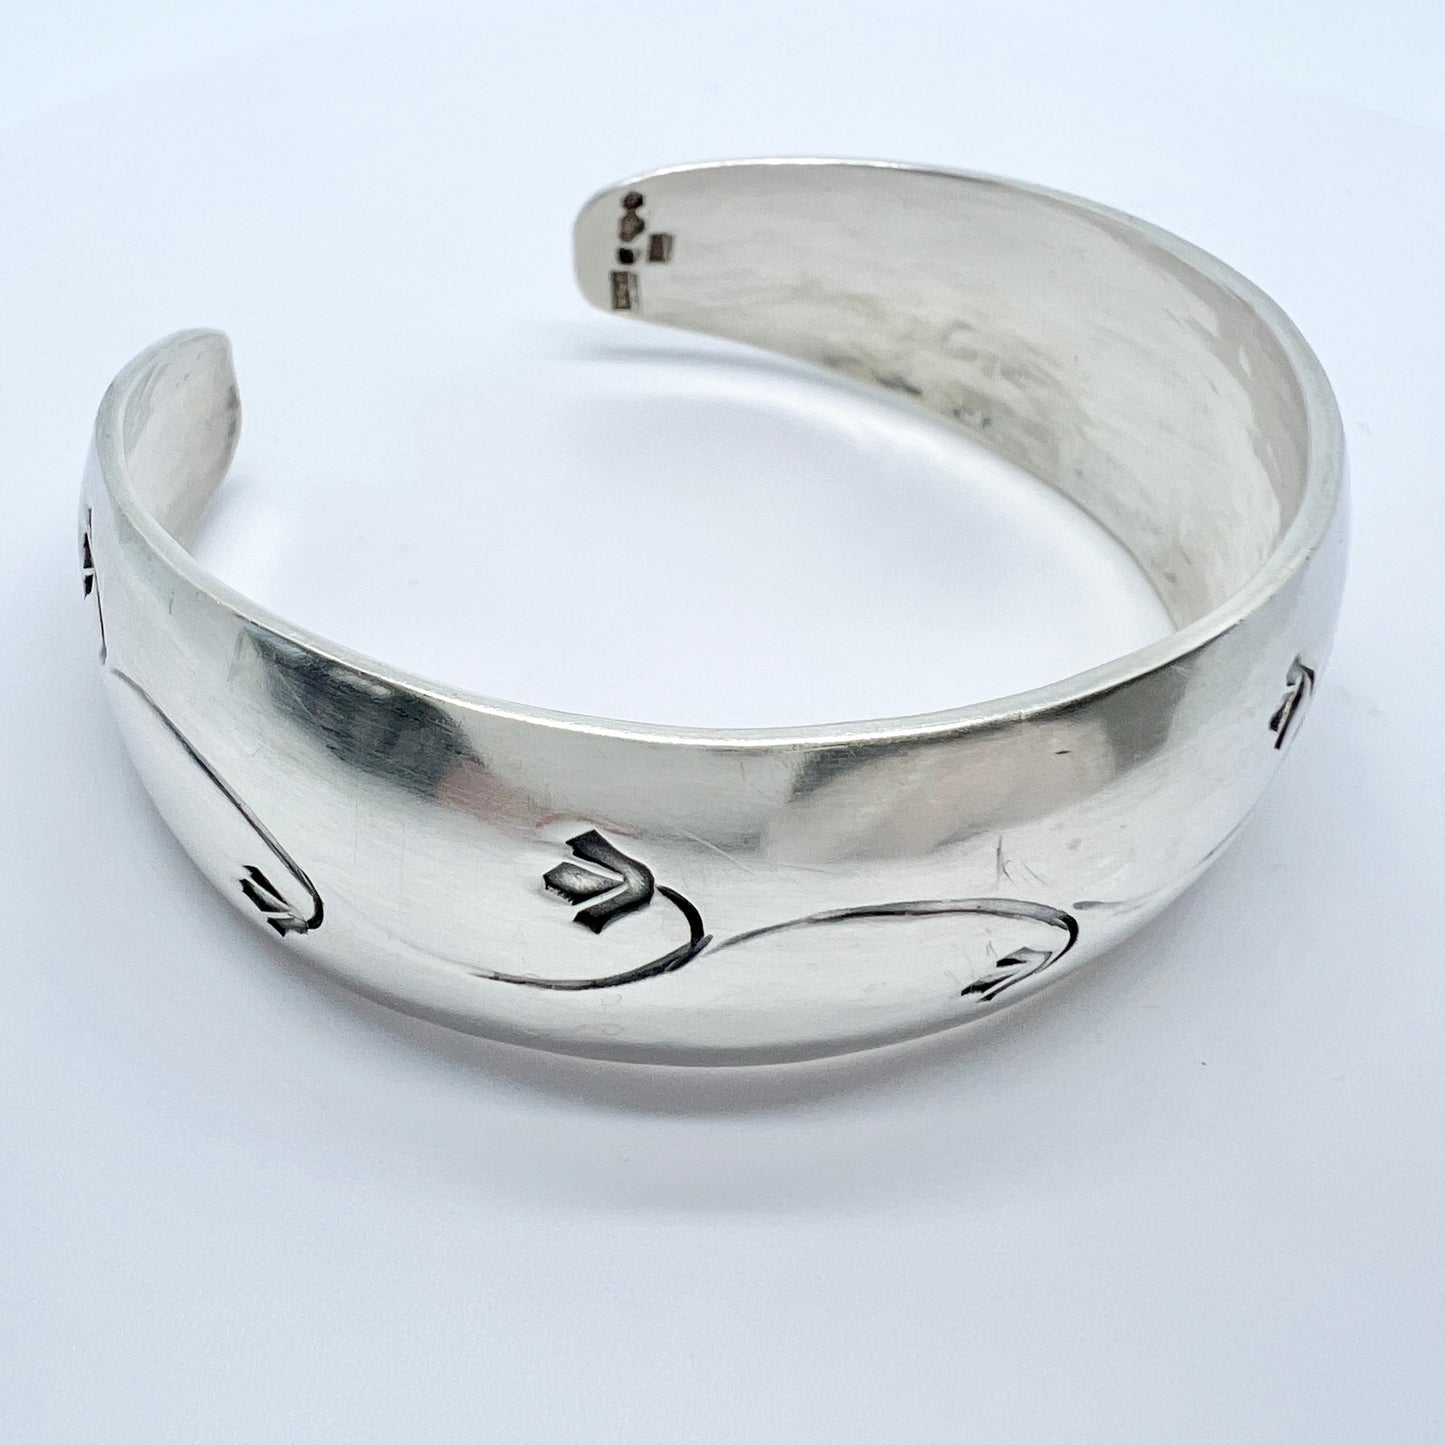 Erik G Olsson, Sweden 1957. Vintage Sterling Silver Cuff Bracelet. 1.5oz